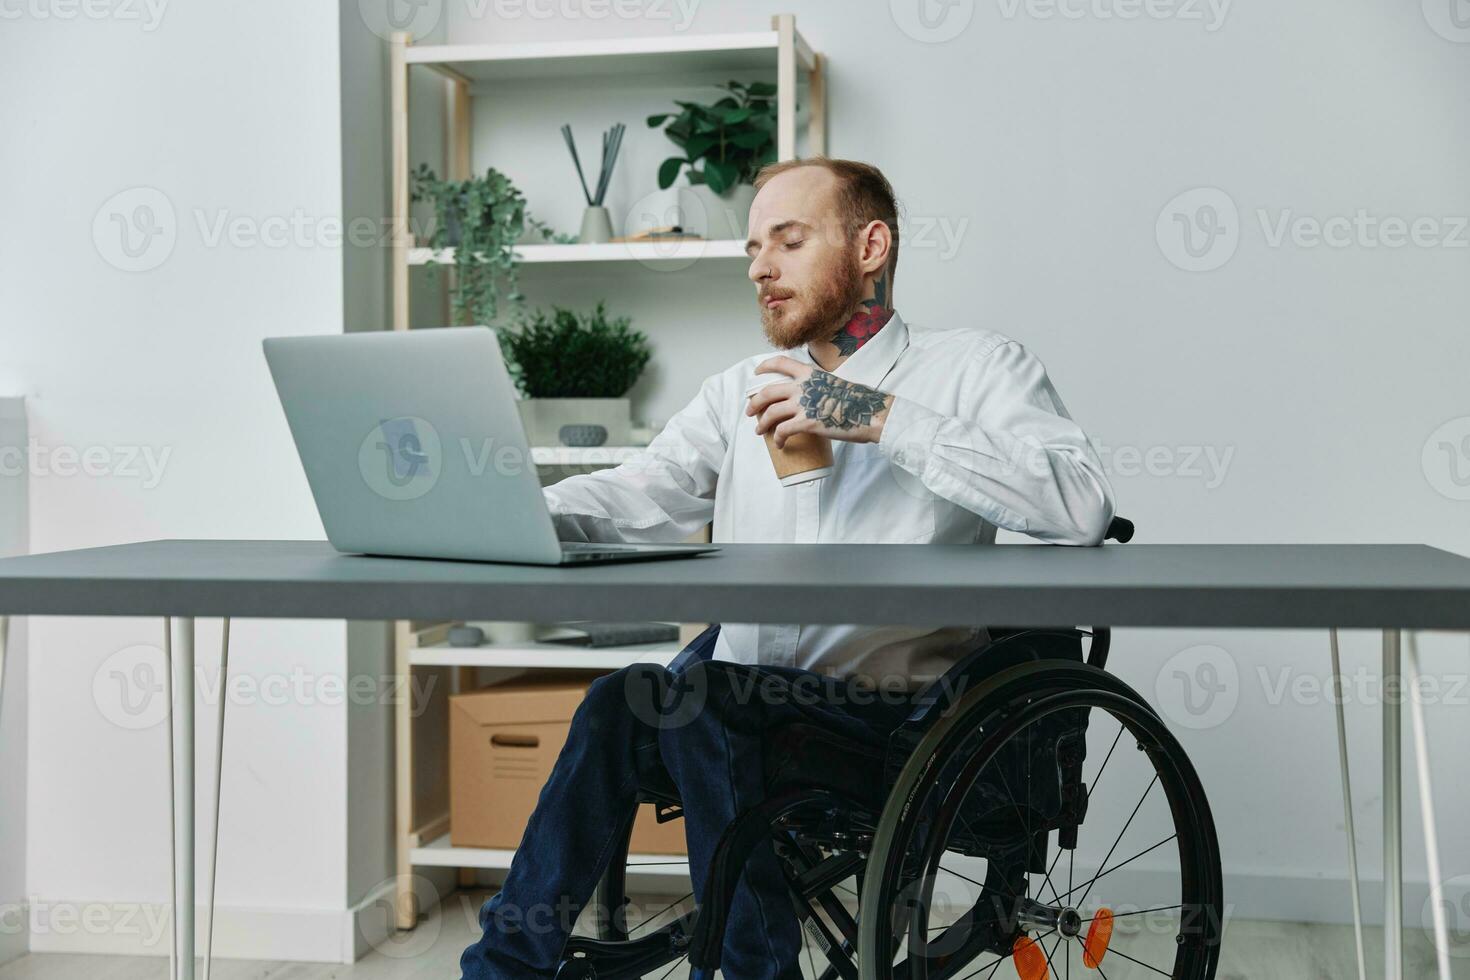 een Mens in een rolstoel een zakenman met tatoeages in de kantoor werken Bij een laptop met koffie, integratie in samenleving, de concept van werken een persoon met handicap, vrijheid van sociaal kader foto